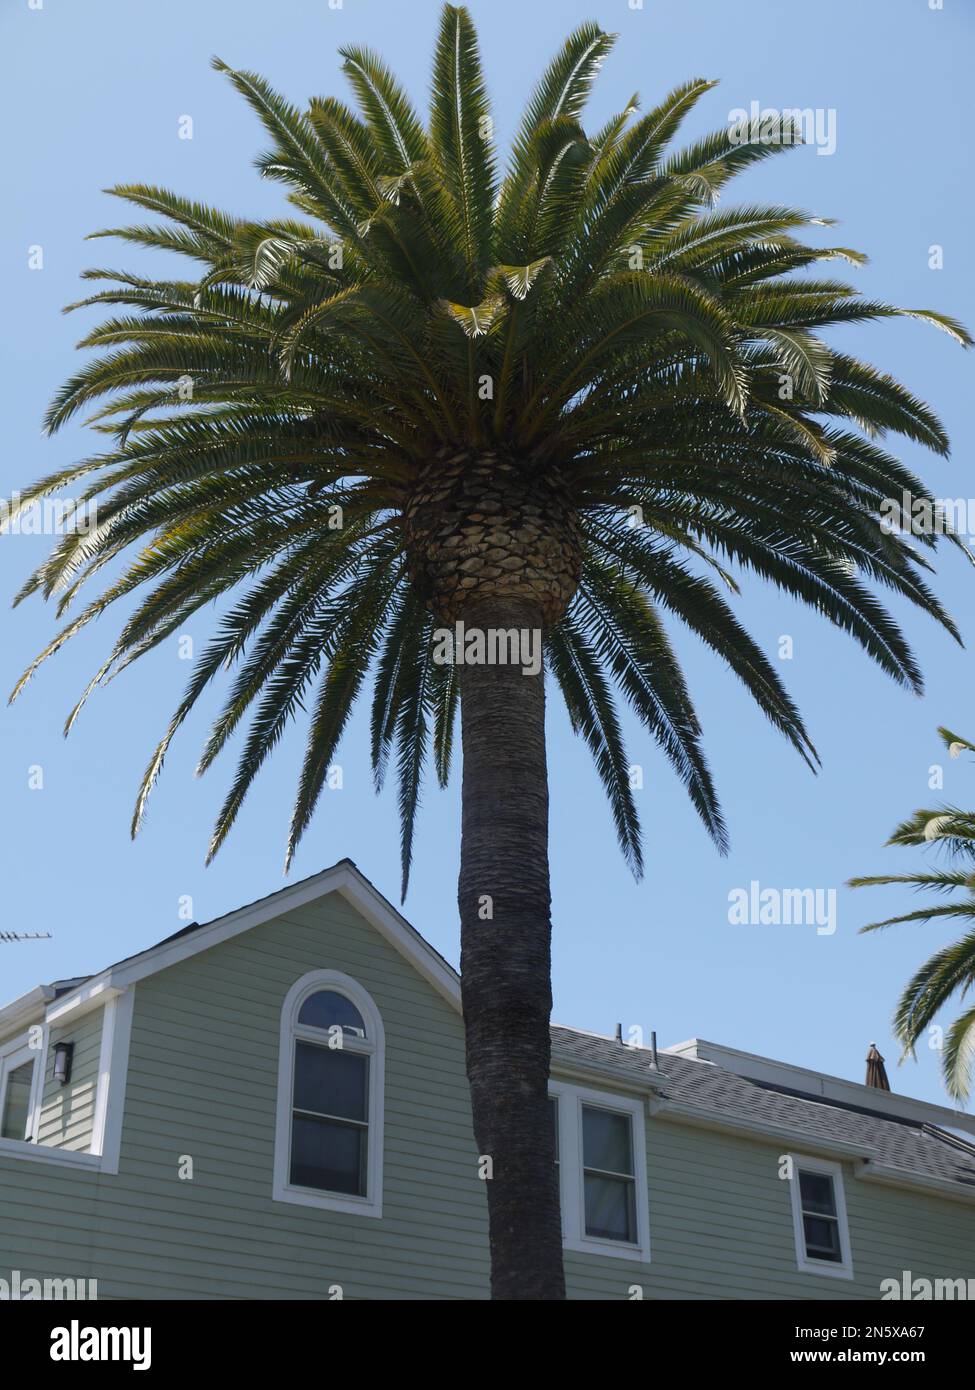 Un Canary Island Date Palm (phoenix canariensis) domina una casa ad angolo nel quartiere storico dei canali di Venezia, Los Angeles County, USA - Maggio 2015 Foto Stock